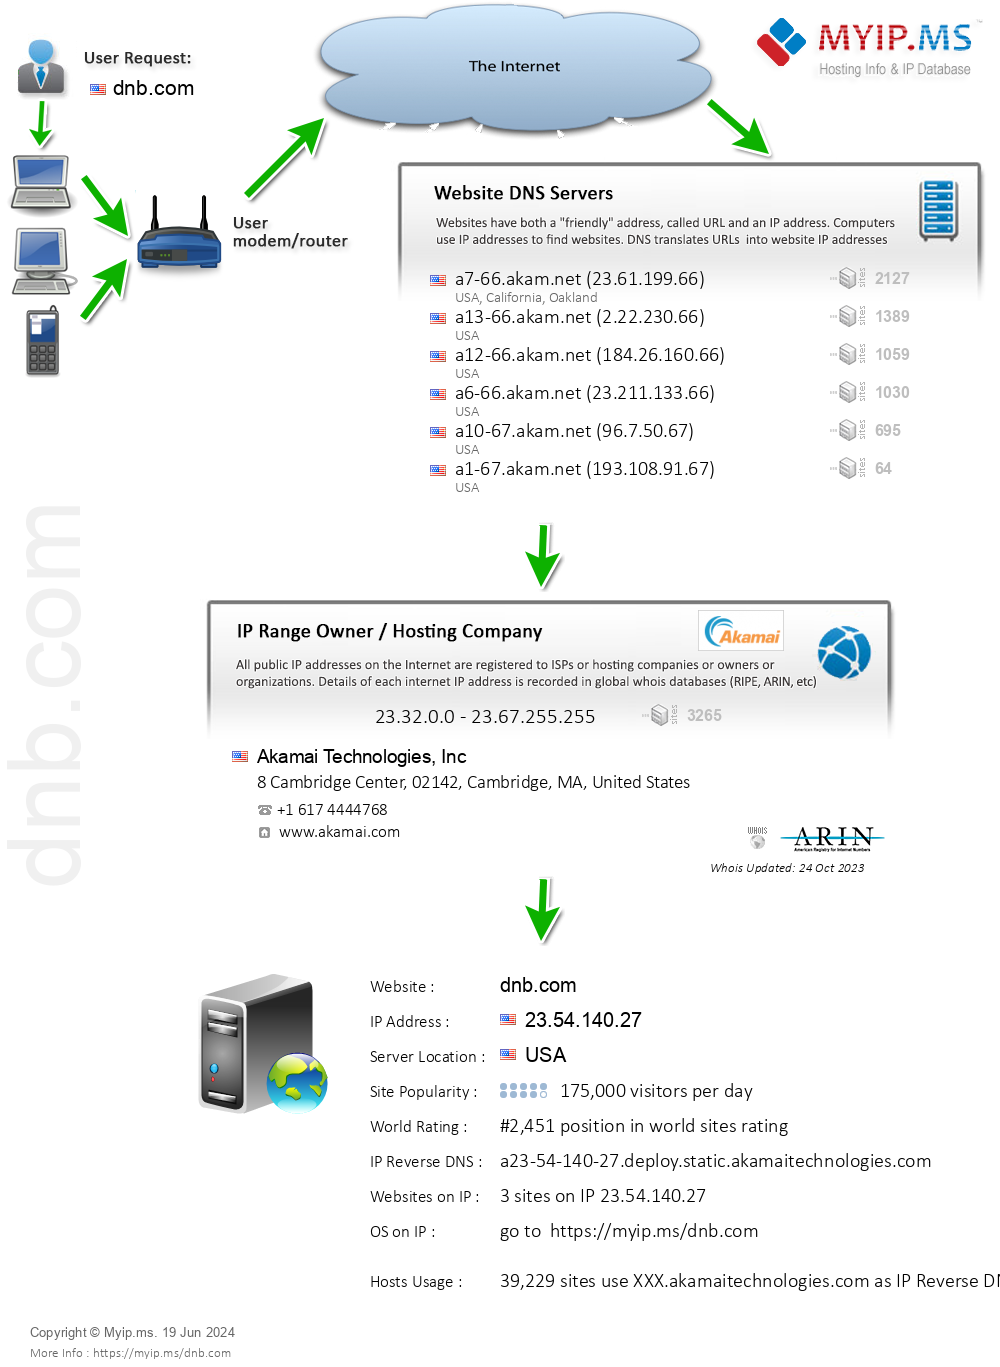 Dnb.com - Website Hosting Visual IP Diagram